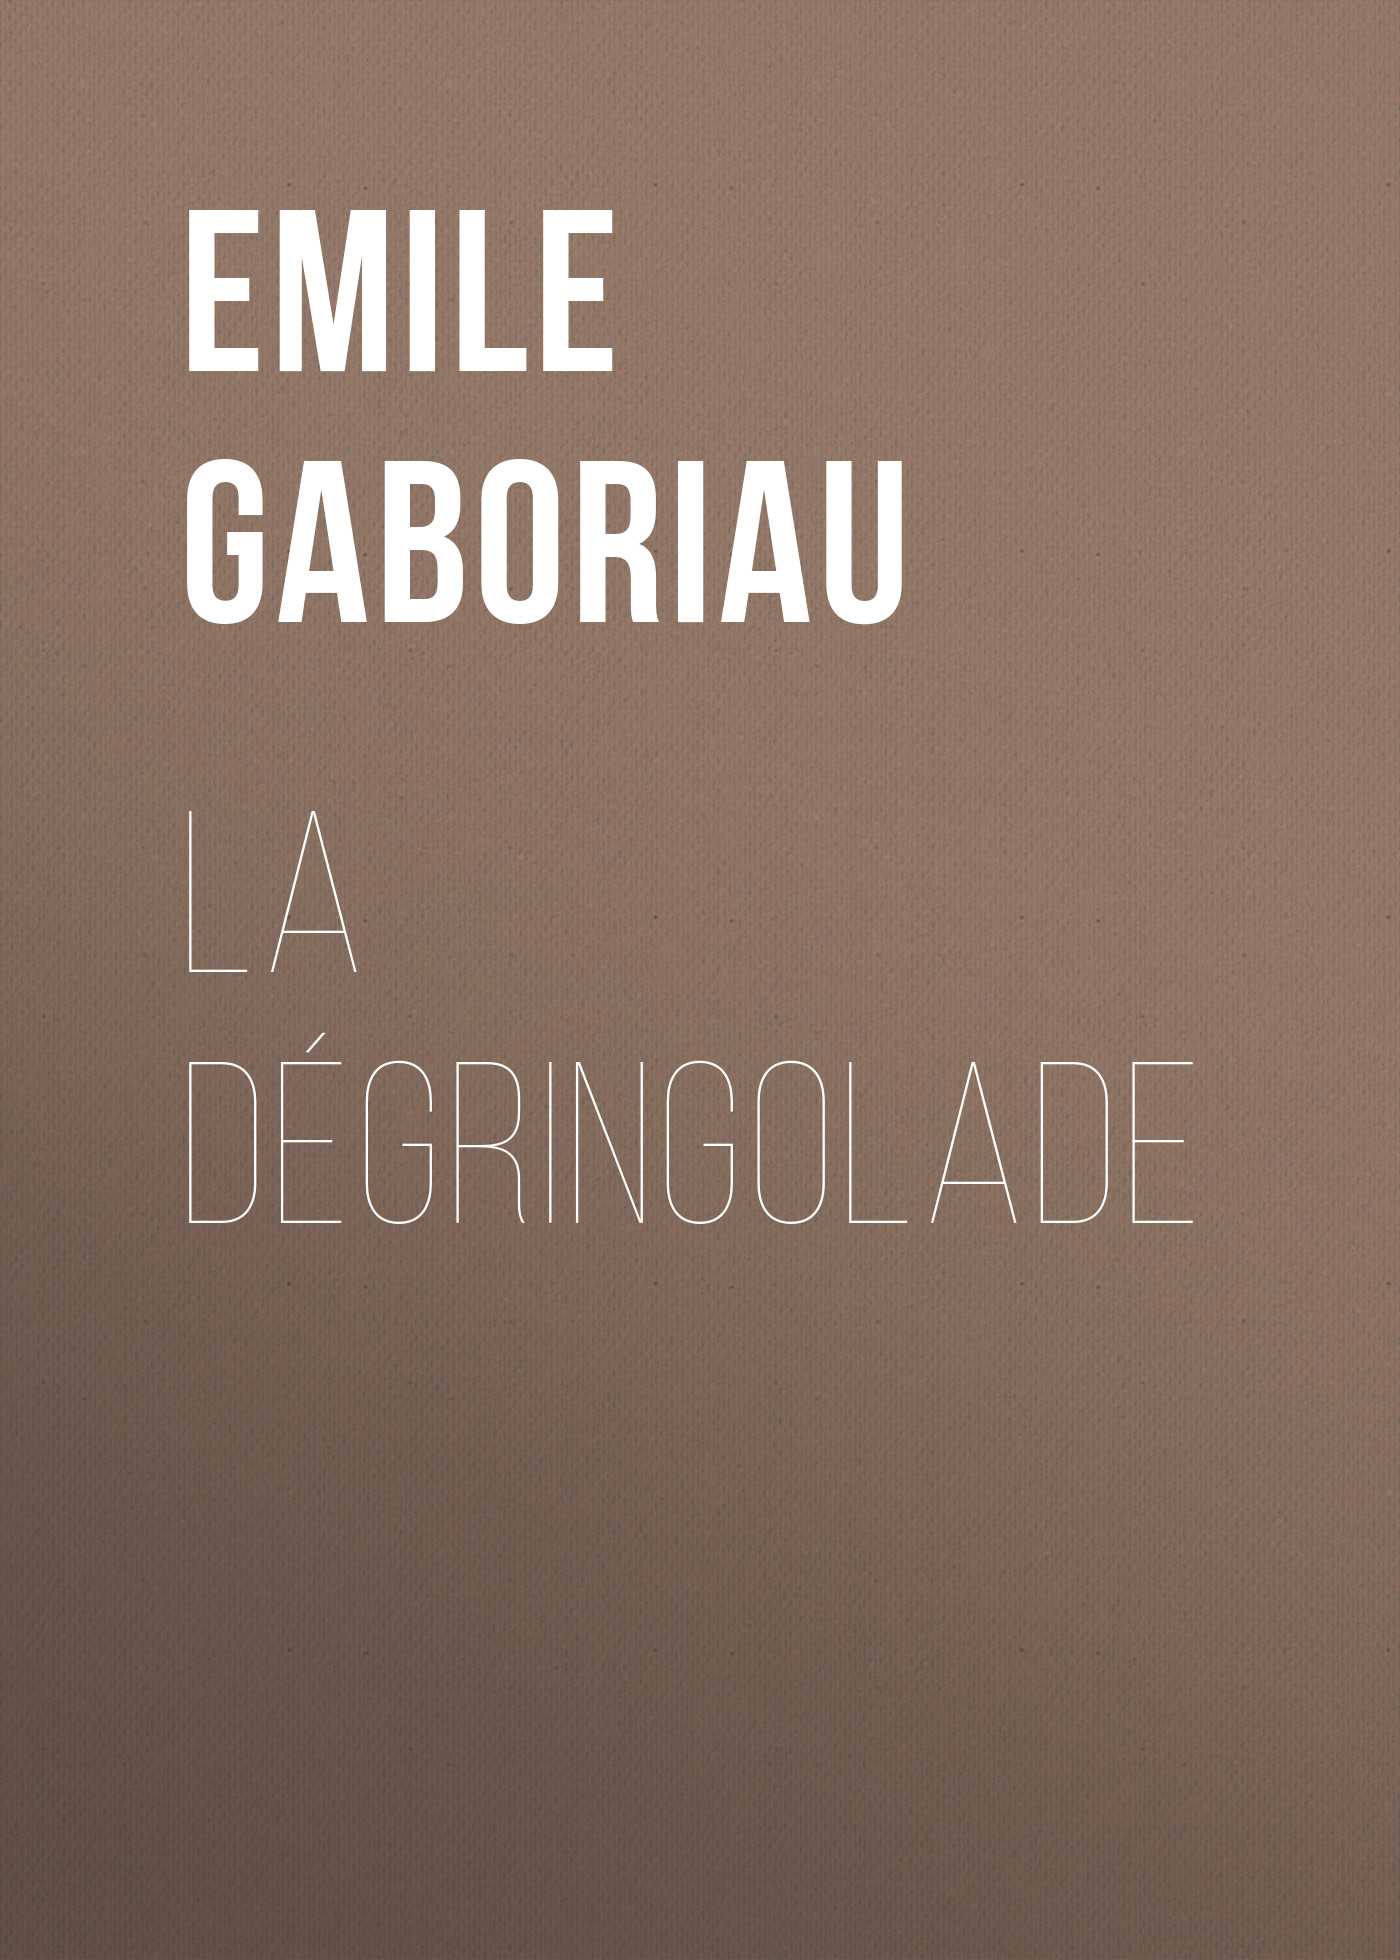 Книга La dégringolade из серии , созданная Emile Gaboriau, может относится к жанру Зарубежная старинная литература, Зарубежная классика. Стоимость электронной книги La dégringolade с идентификатором 24859427 составляет 0 руб.